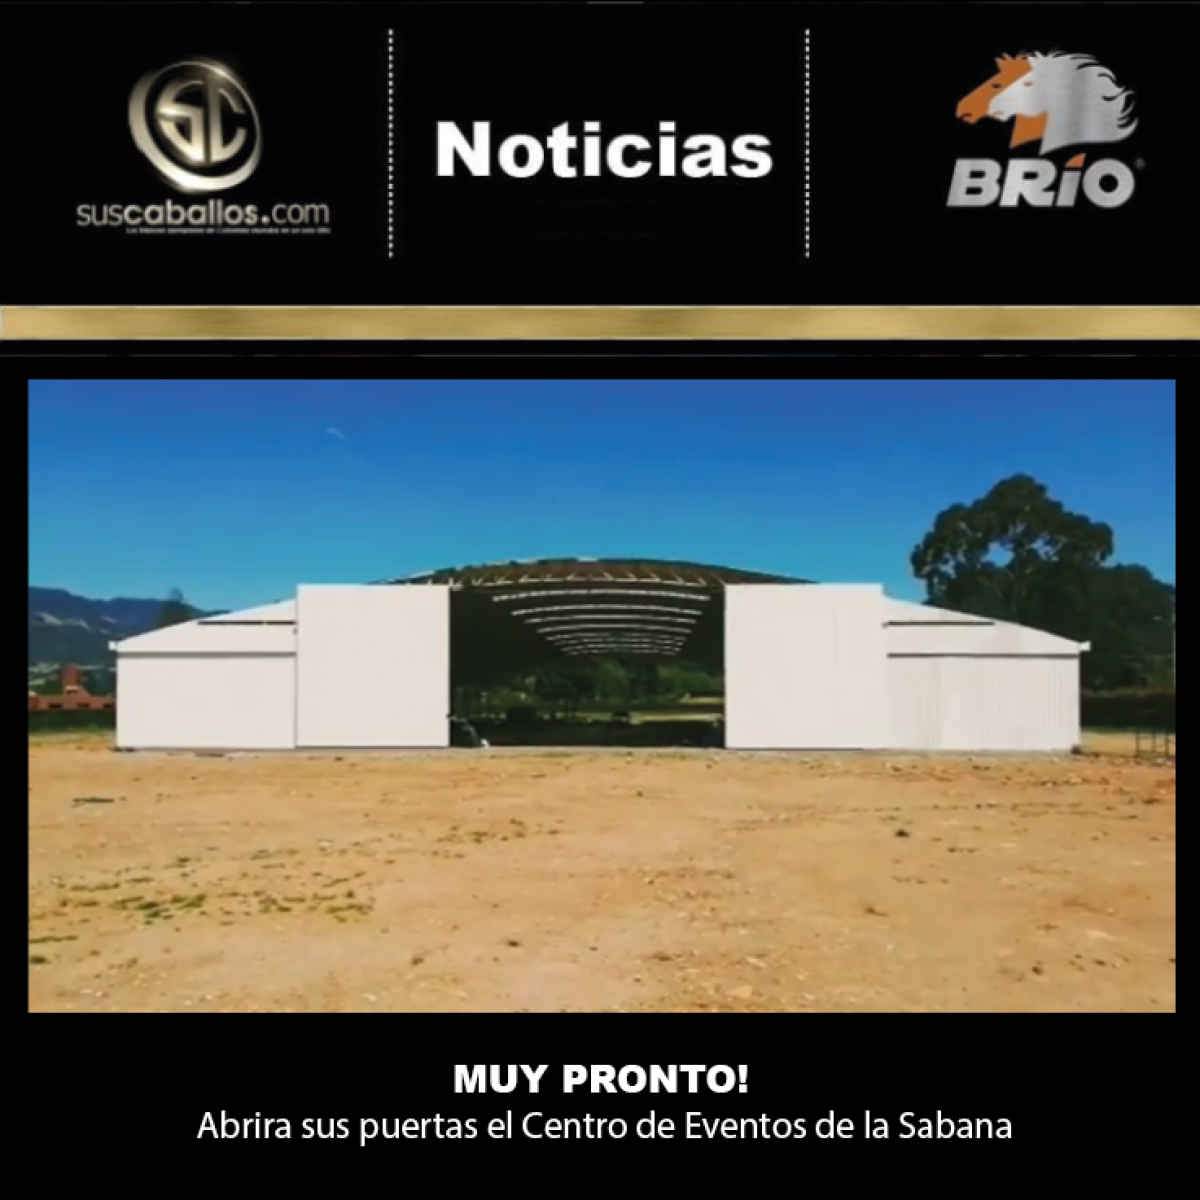 Gran Noticia para el gremio equino de la Sabana de Bogotá, muy pronto abrirá las puertas CENTRO DE EVENTOS DE LA SABANA